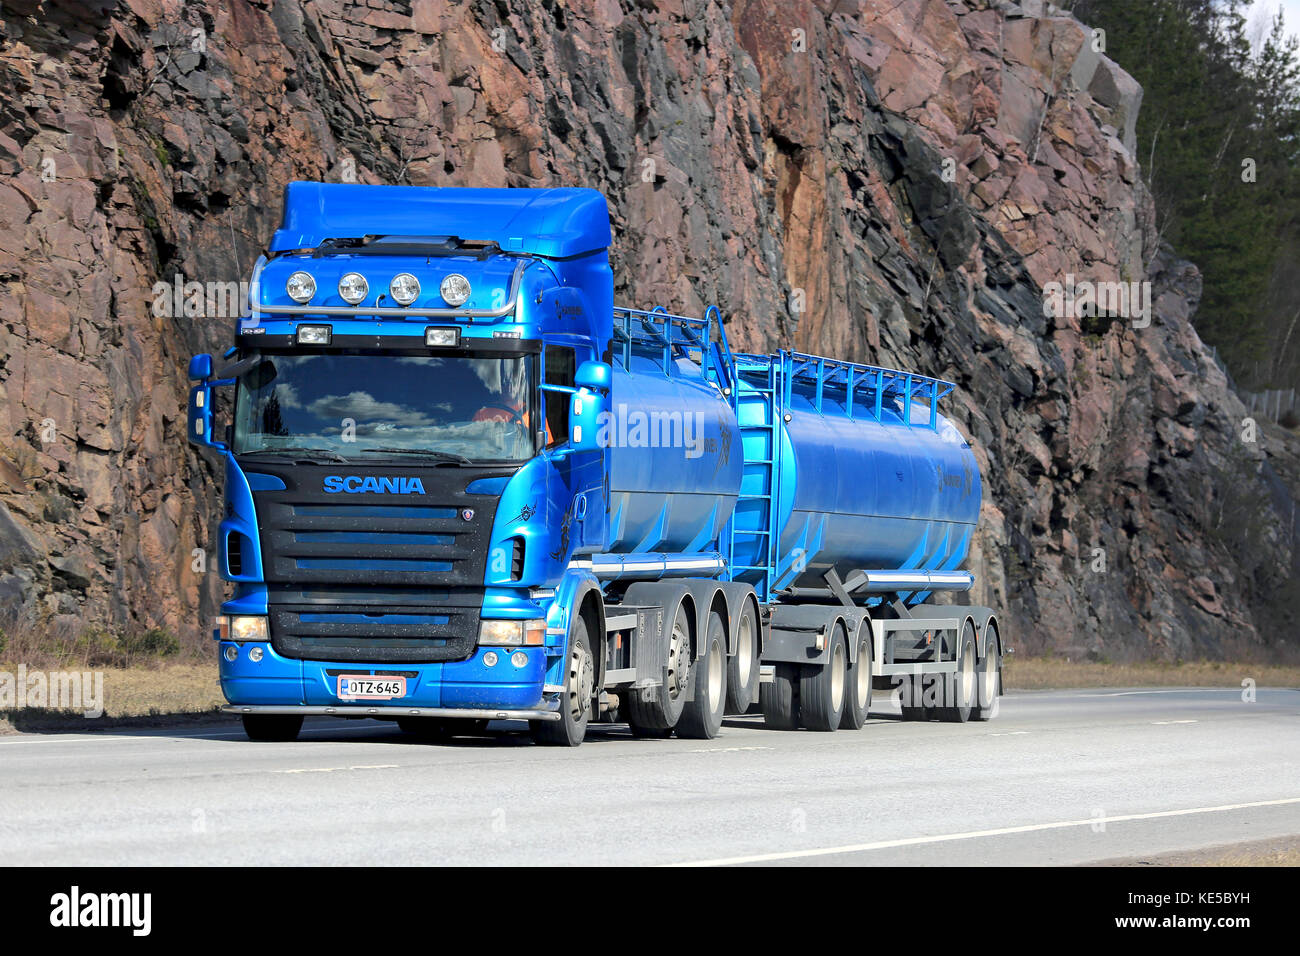 Karjaa, Finlandia - 10 aprile 2016: blu scania r500 autobotte si muove lungo l'autostrada, con parete di roccia sullo sfondo. Foto Stock